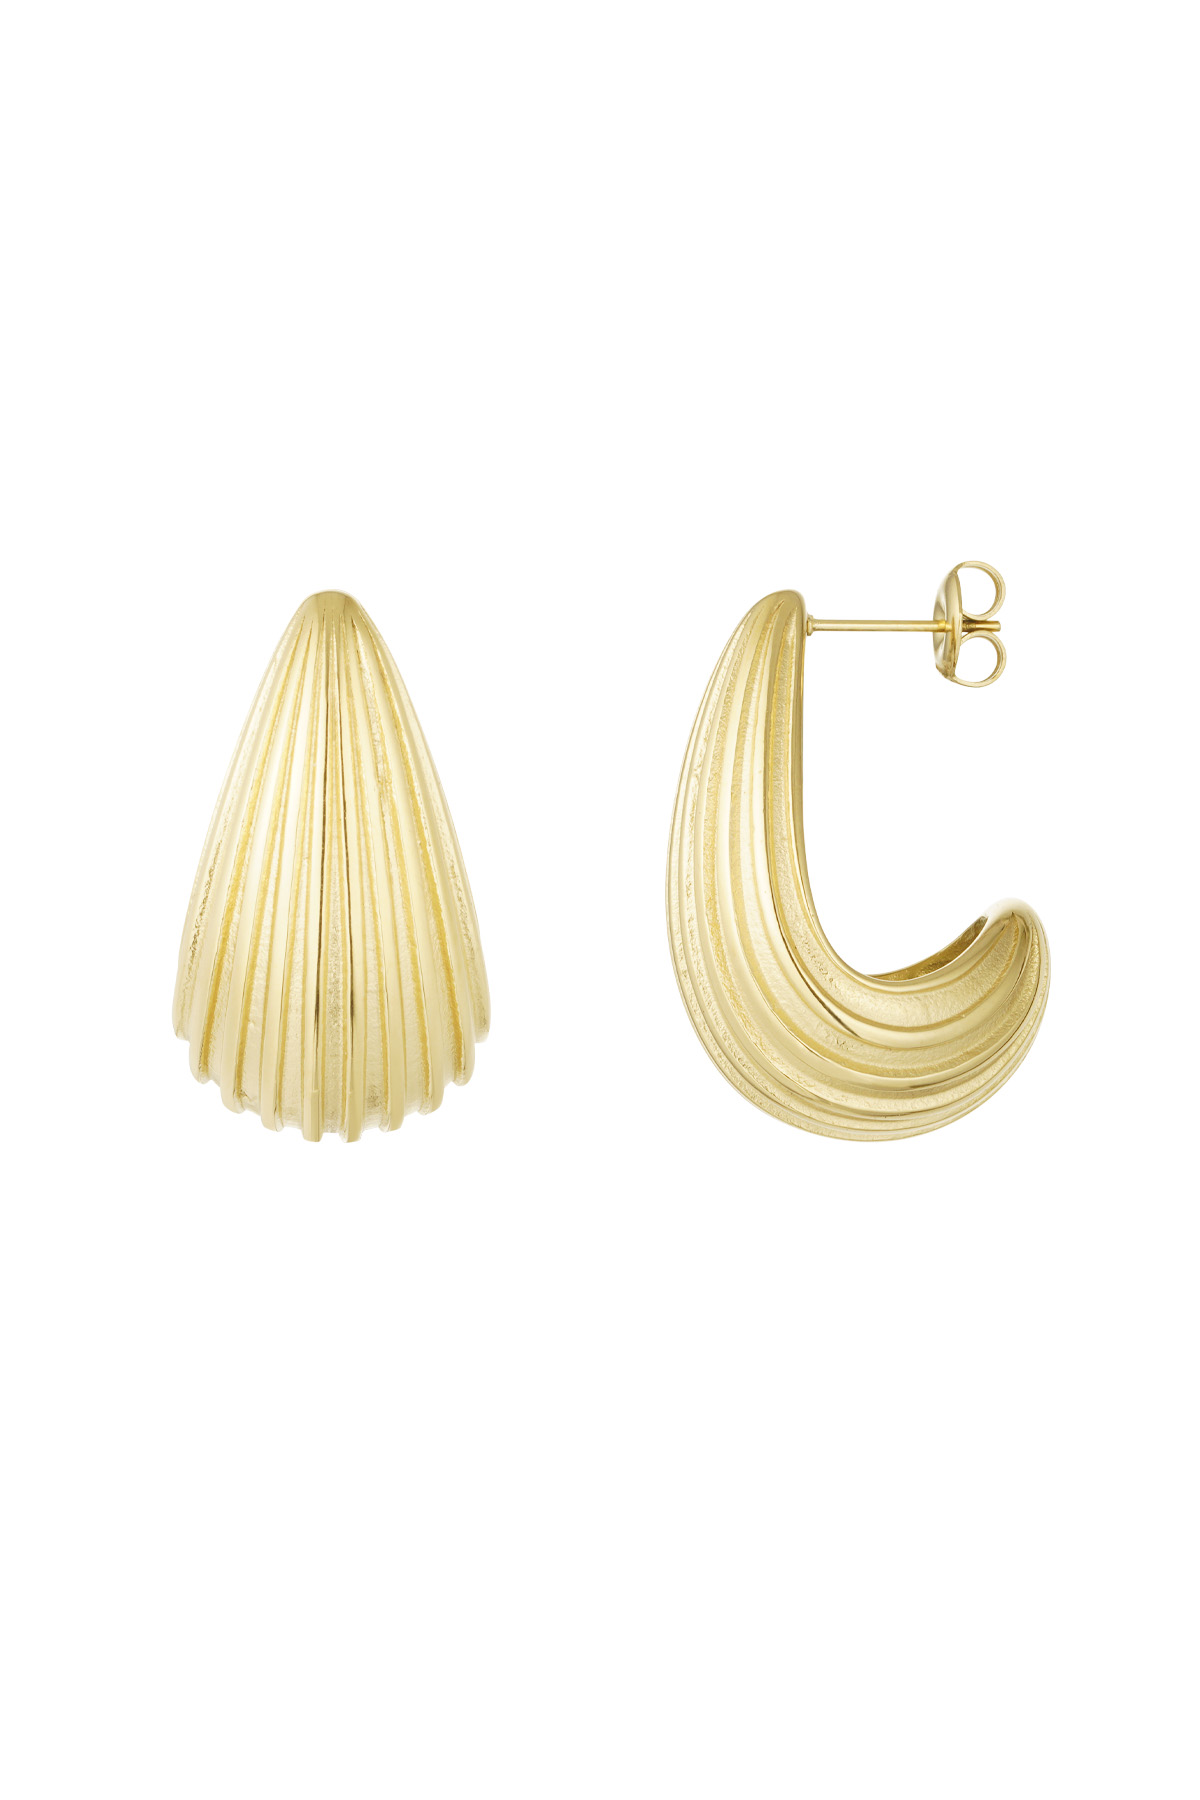 Earrings drop open structure - gold